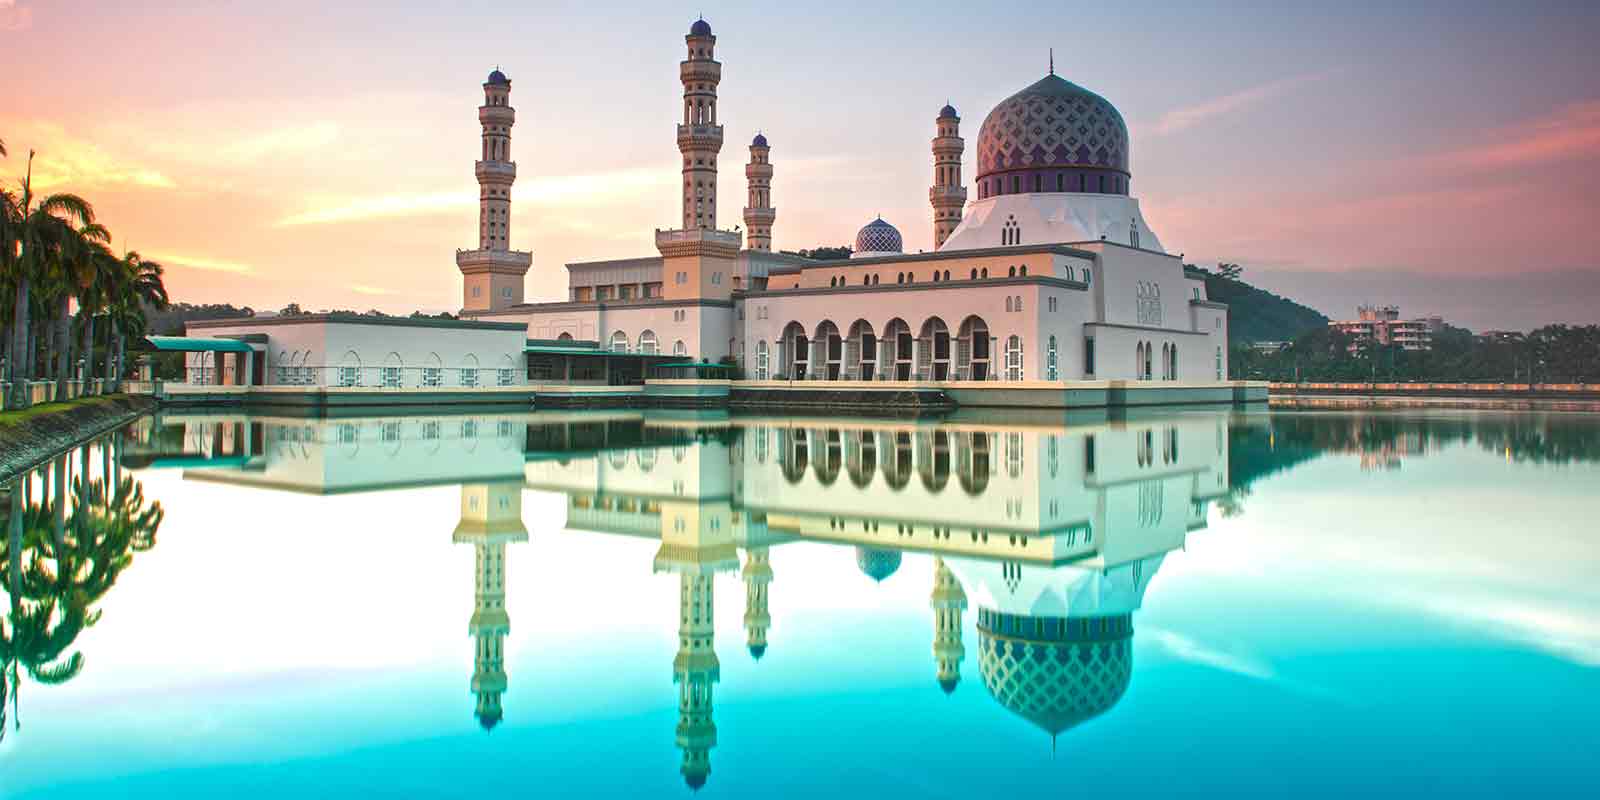 Reflection of Kota Kinabalu mosque at sunrise